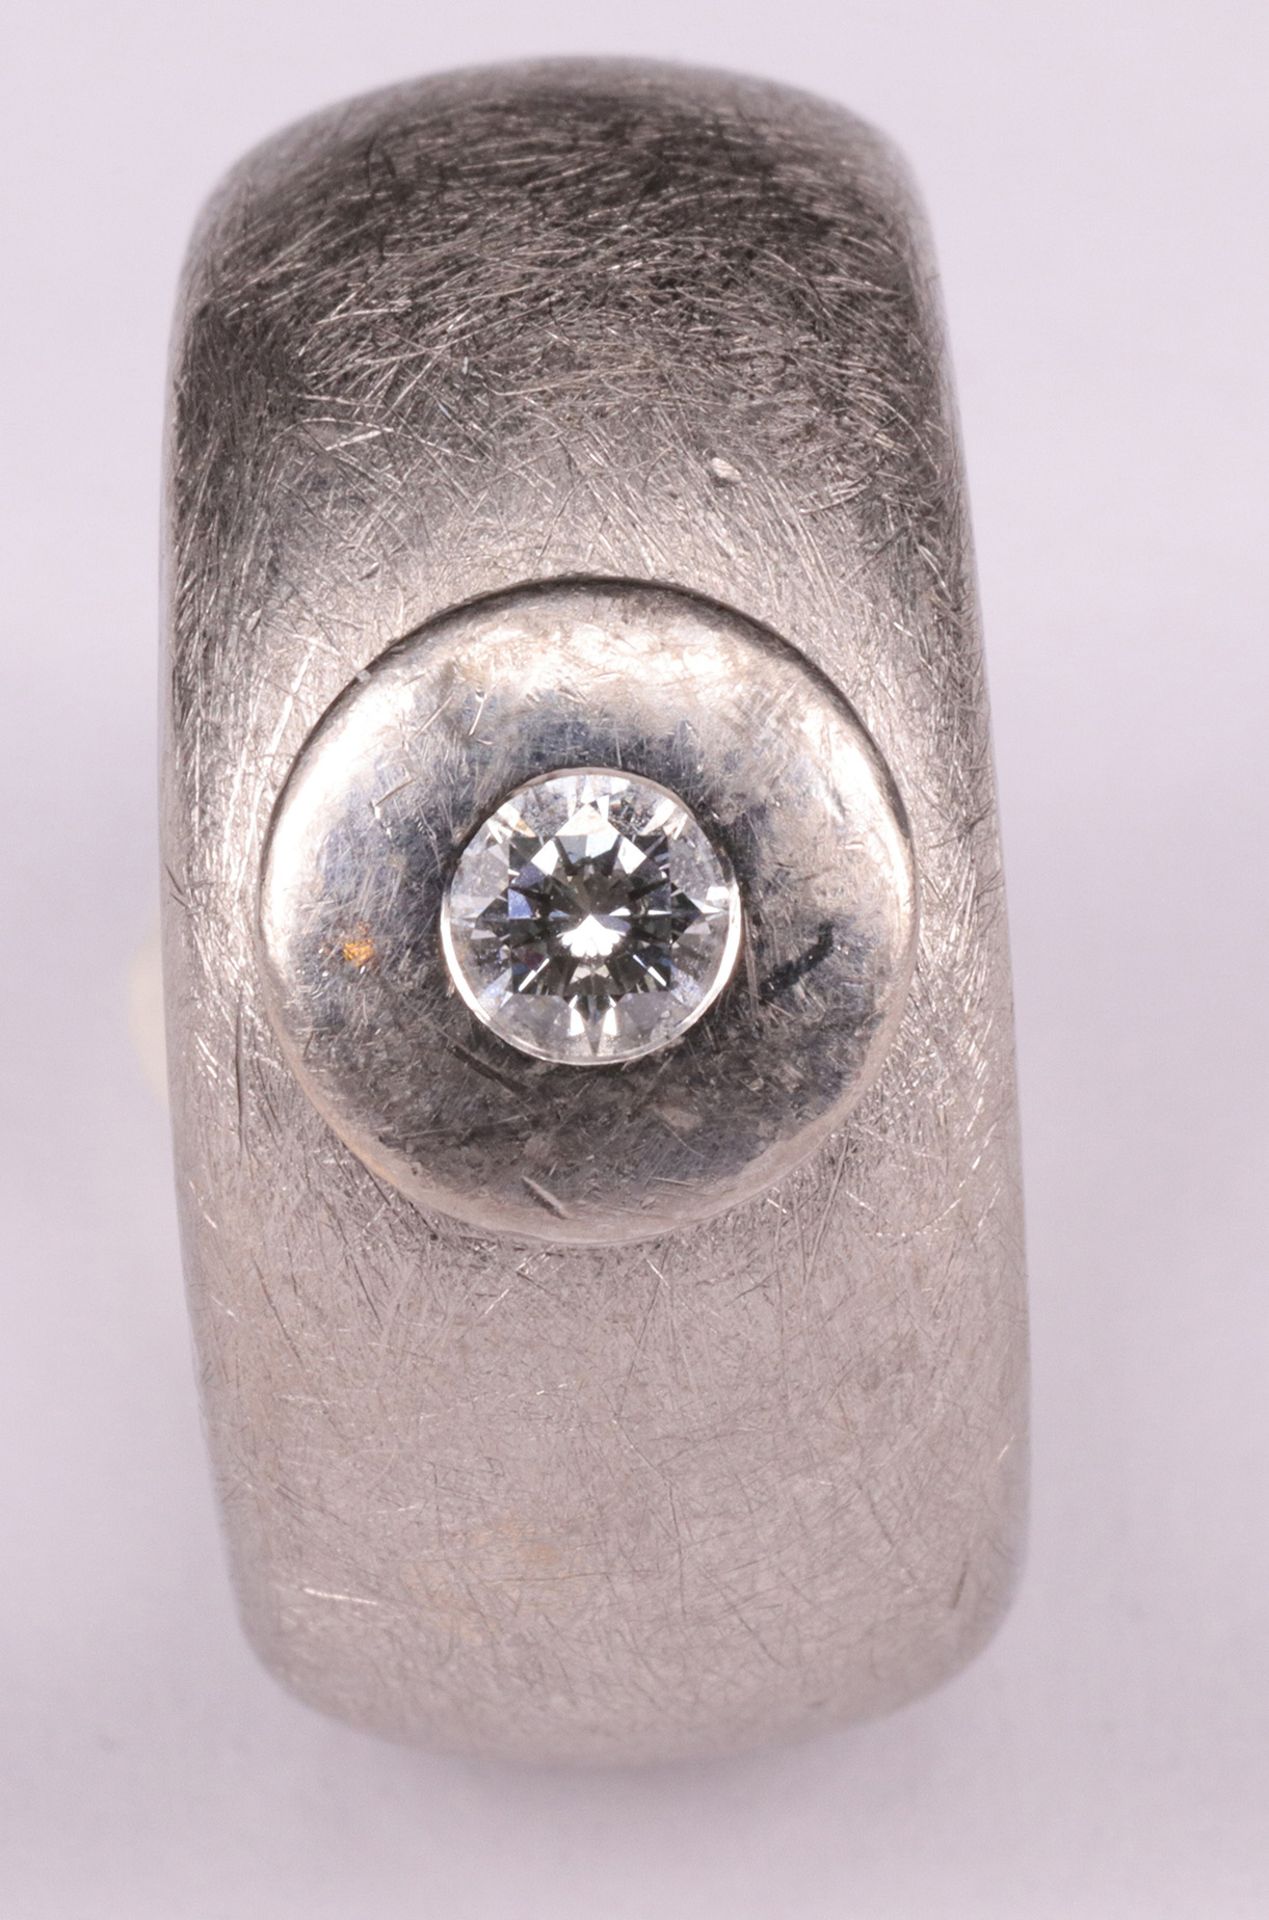 Schwerer Ring, 750er Weißgold, Diamant ca. 0,25 ct, gebürstet, Anfertigung, Gebrachtsspuren, RG62, - Image 2 of 3